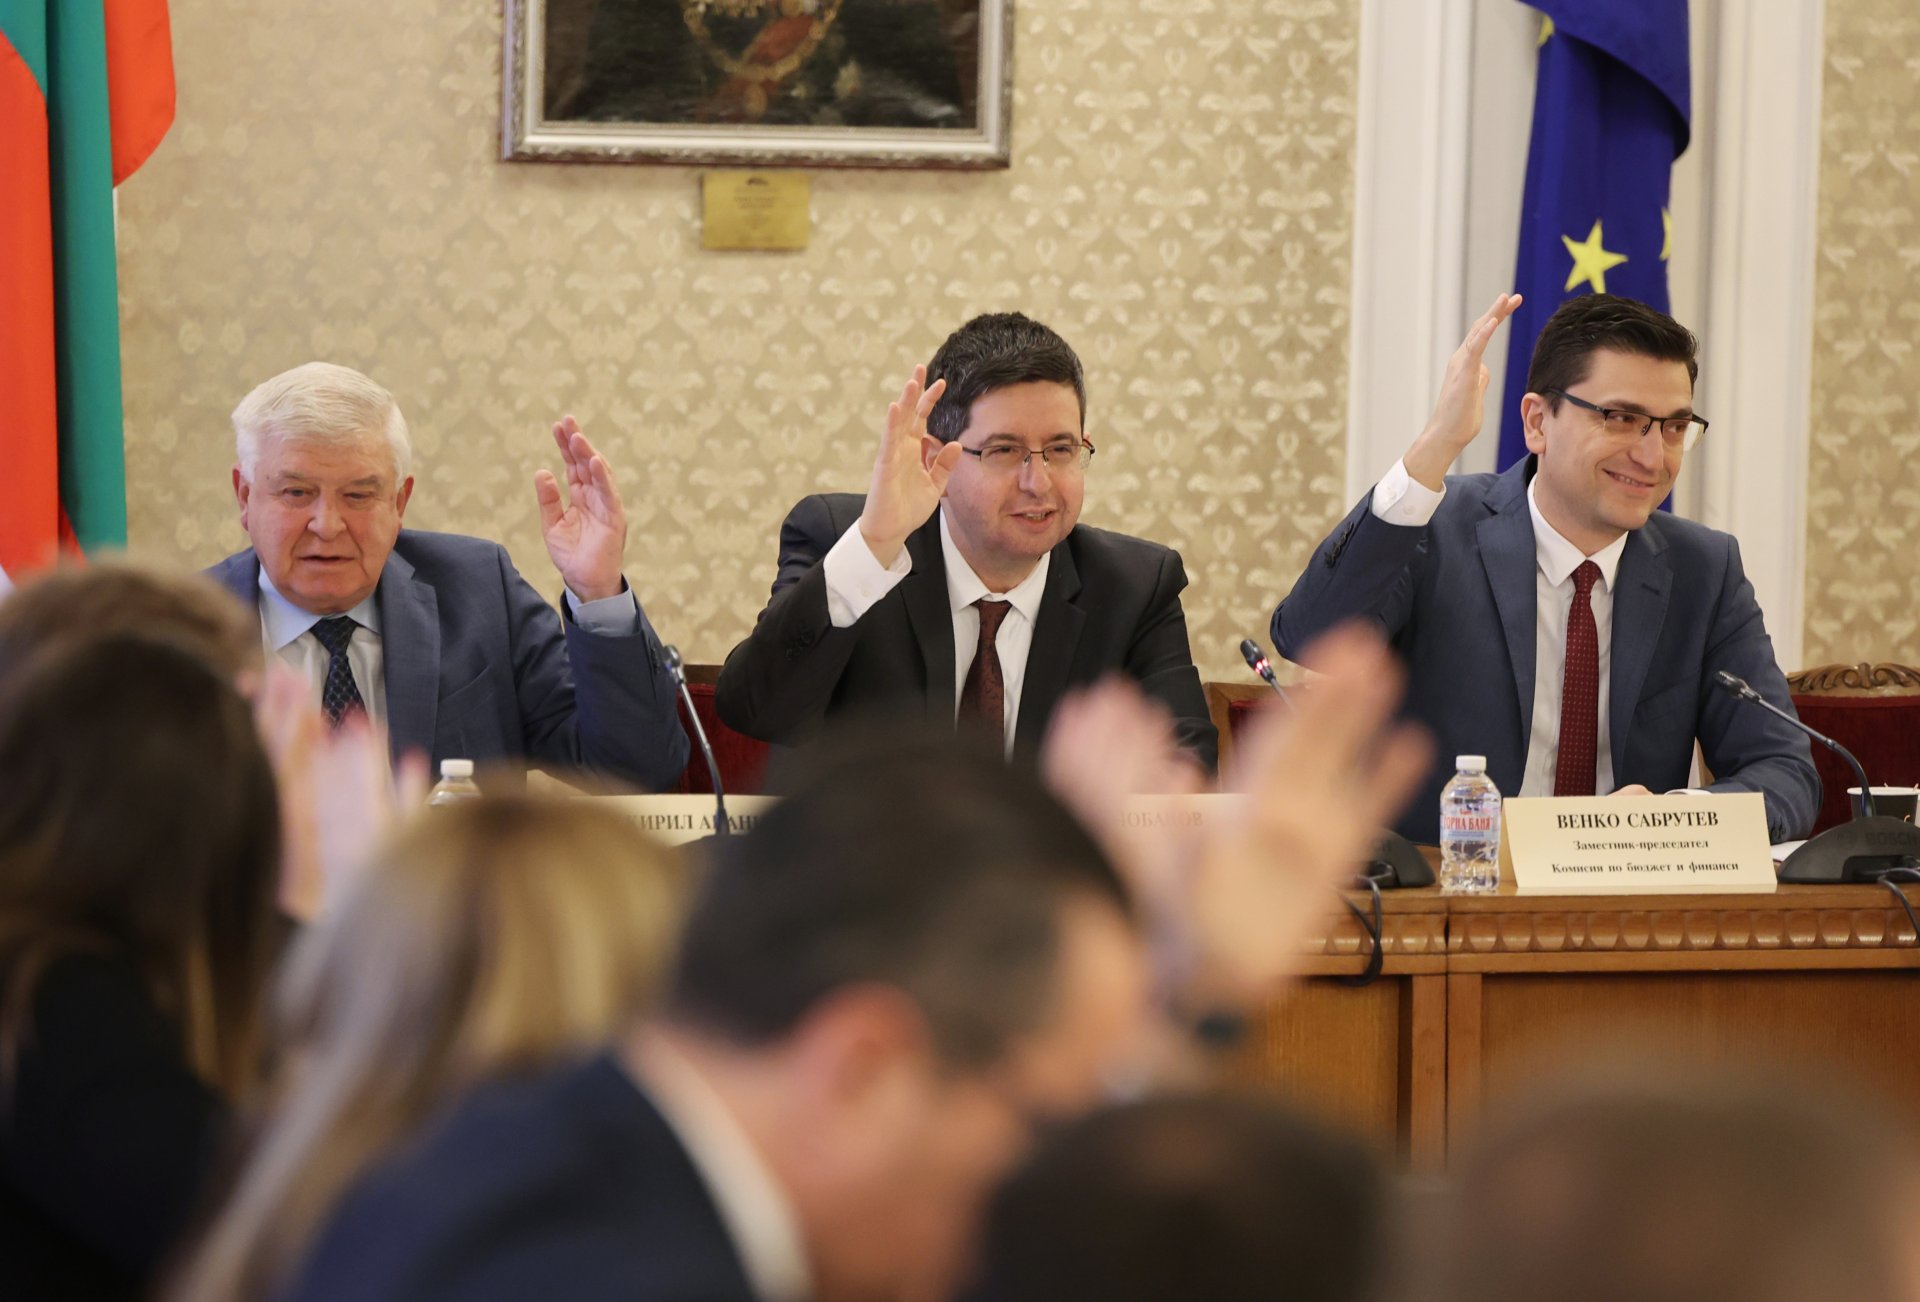 Гласуване в бюджетната комисия на 6 декември: председателят на комисията Петър Чобанов, Венко Сабрутев (вдясно), Кирил Ананиев (вляво)